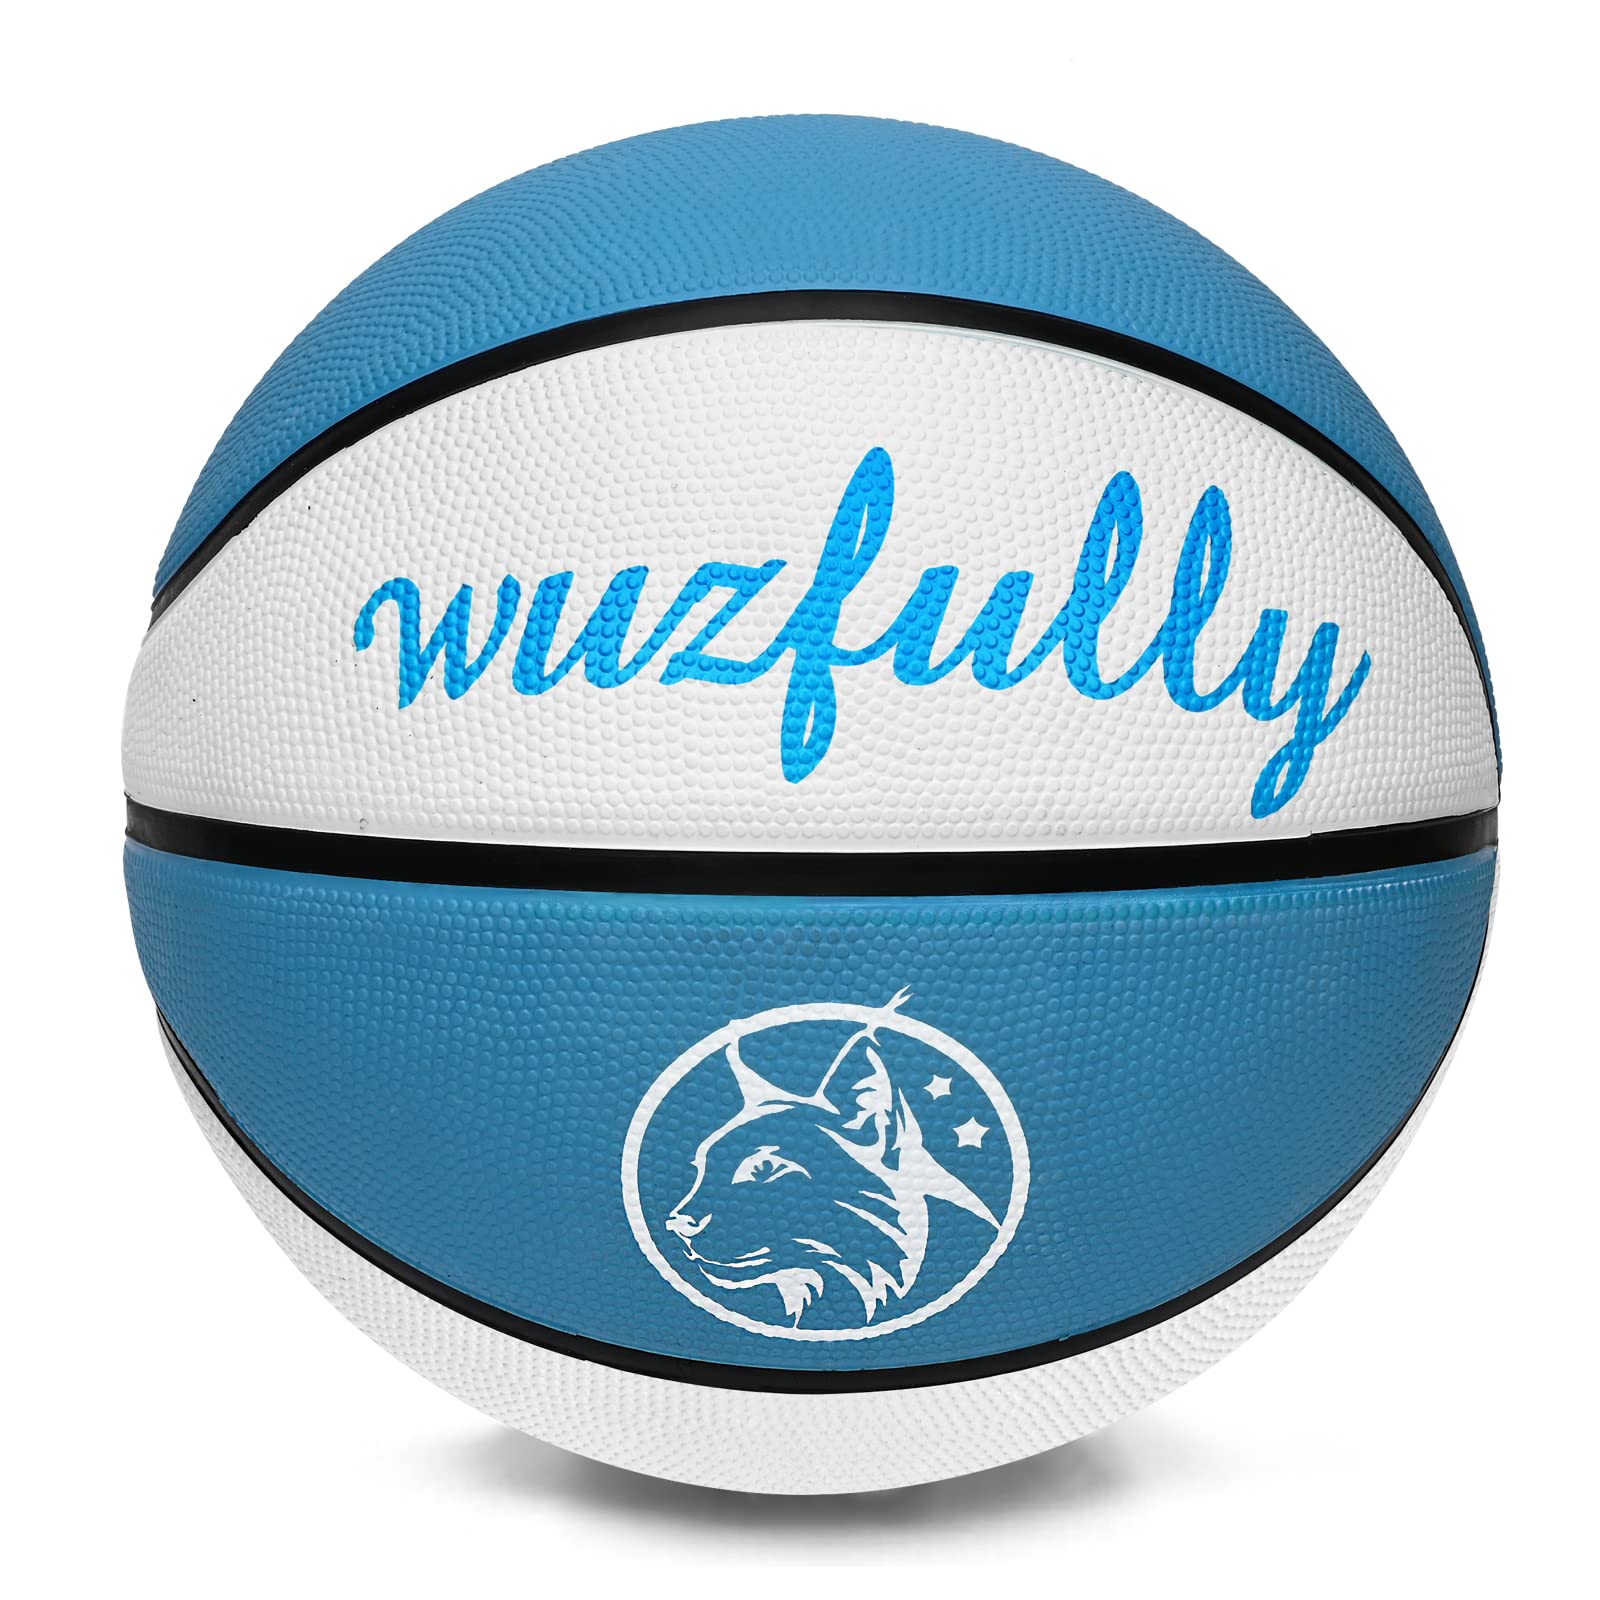 Exclusif Wuzfully Ballon de Basket Taille 5 Interieur Extérieur Ballon de Basket pour Adulte Enfan 8o75GbRVn en ligne